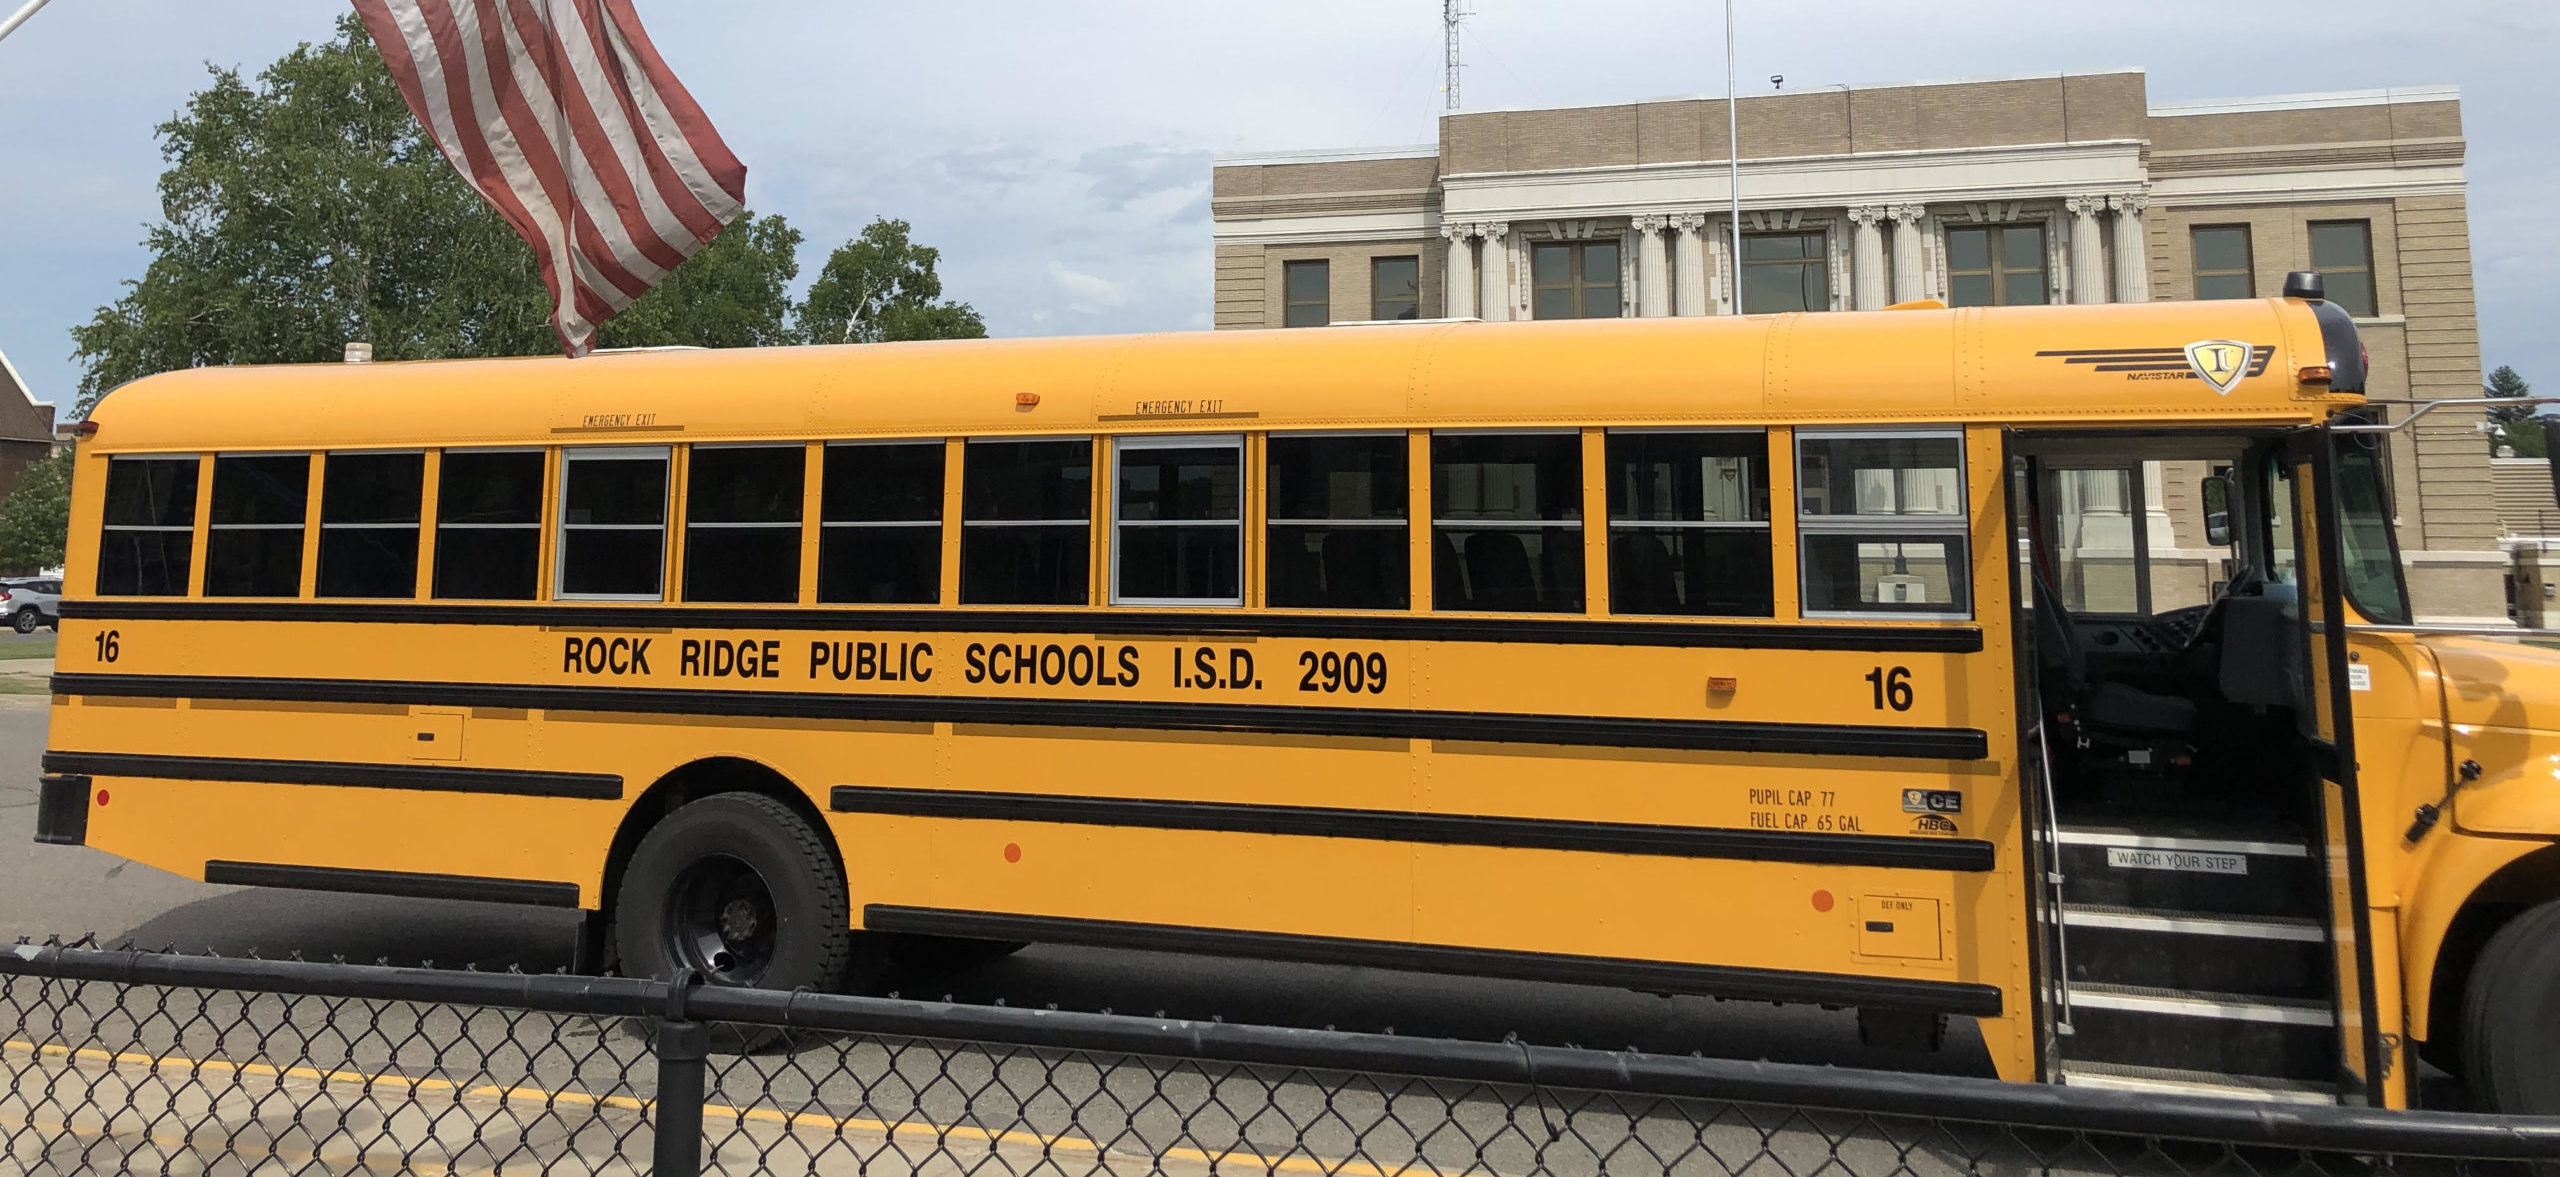 Bus Schedule Rock Ridge Public Schools